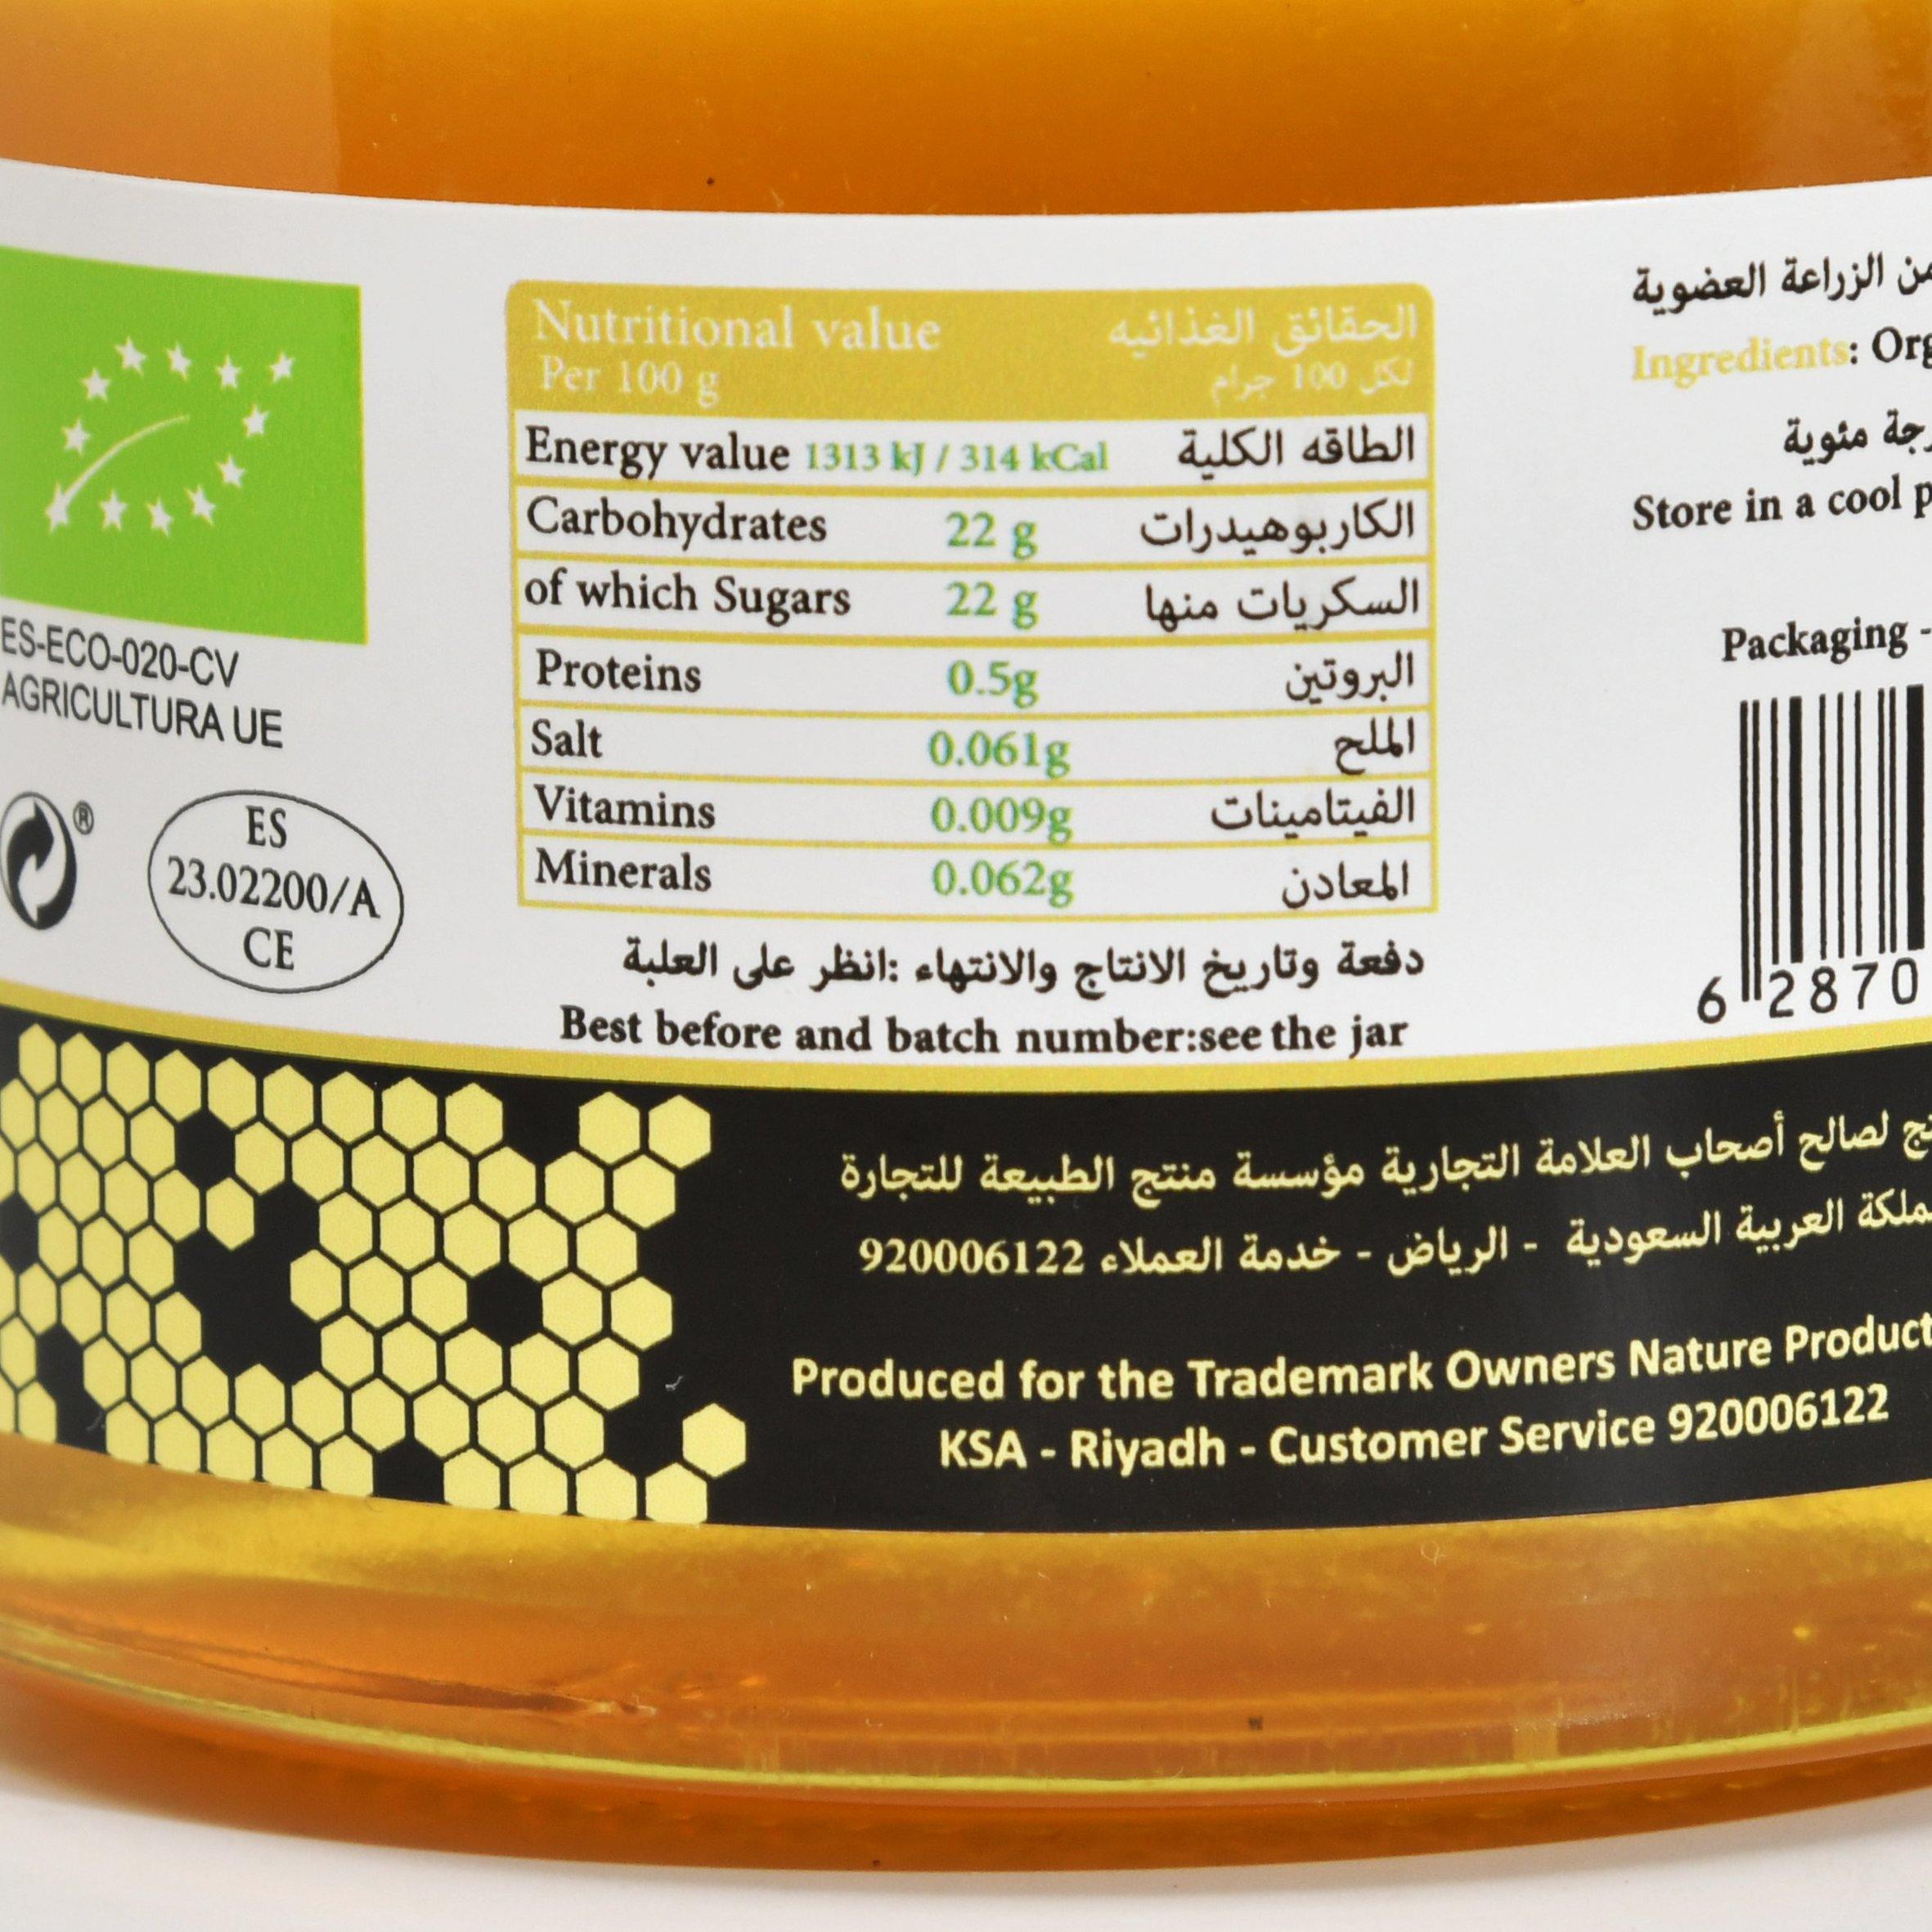 عسل الأكاسيا العضوي من منتج الطبيعة - الغذاء الحيوي